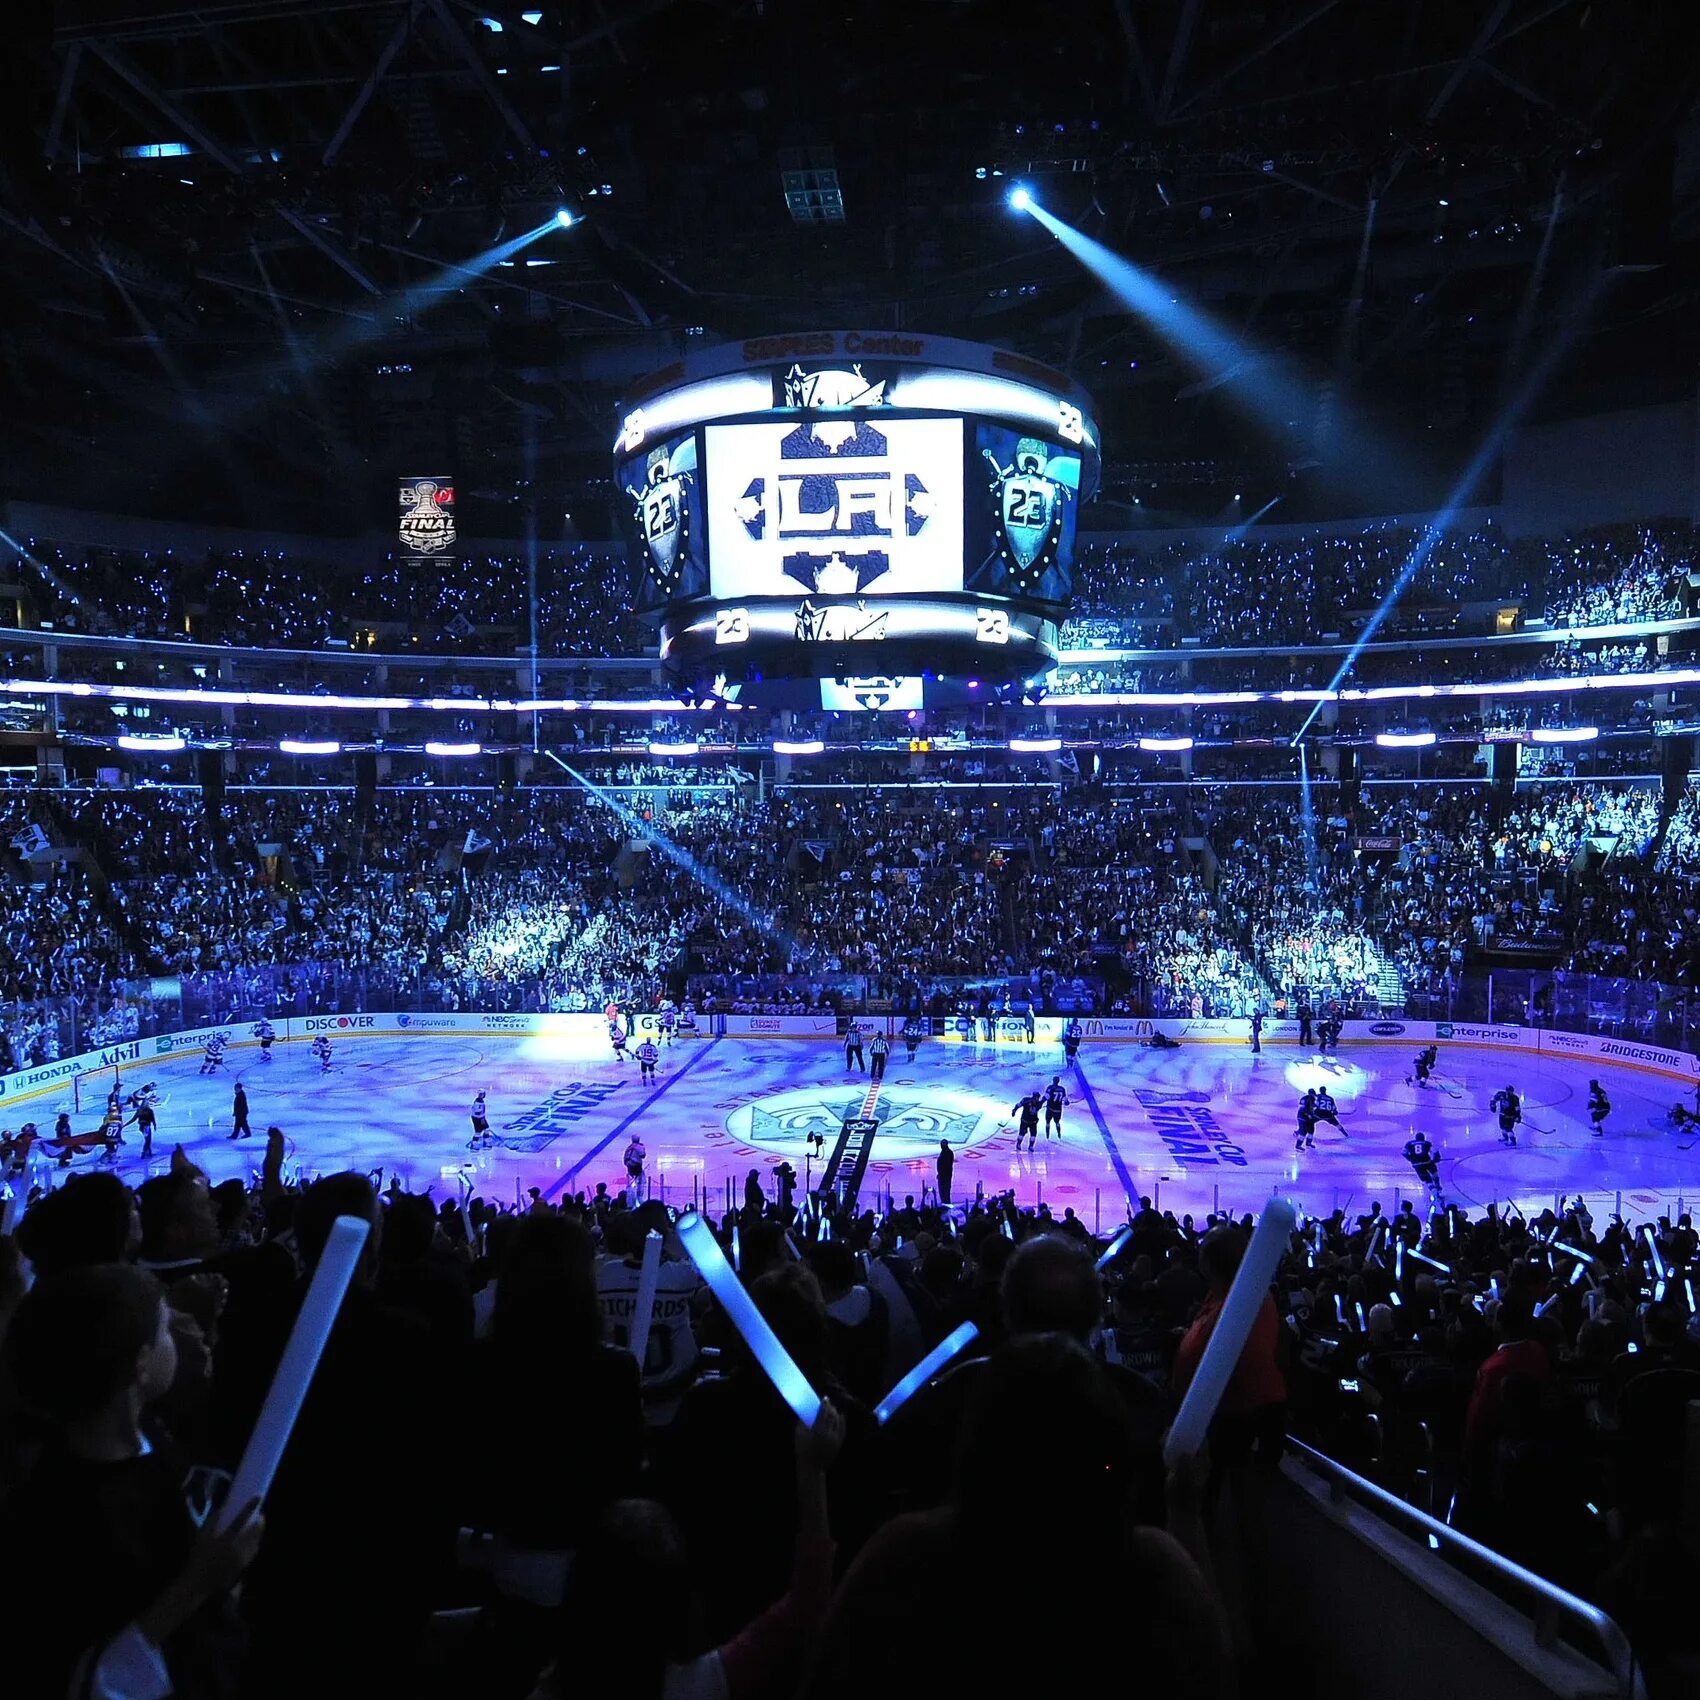 Arena lmsys org. Ледовый дворец хоккейная Арена. Хоккейный стадион НХЛ. Хоккейная Арена NHL.